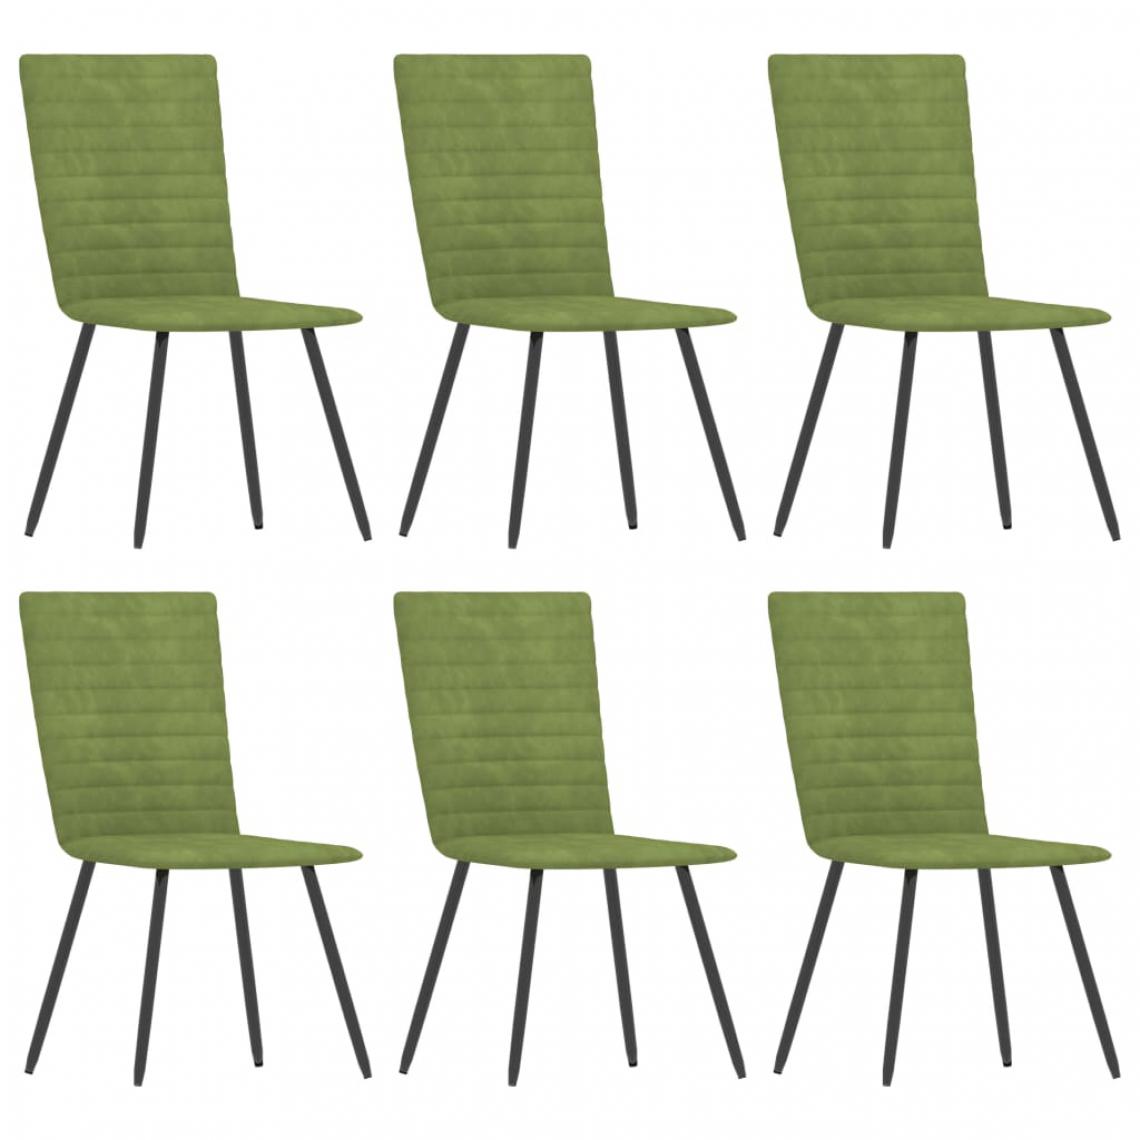 Chunhelife - Chunhelife Chaises de salle à manger 6 pcs Vert Velours - Chaises